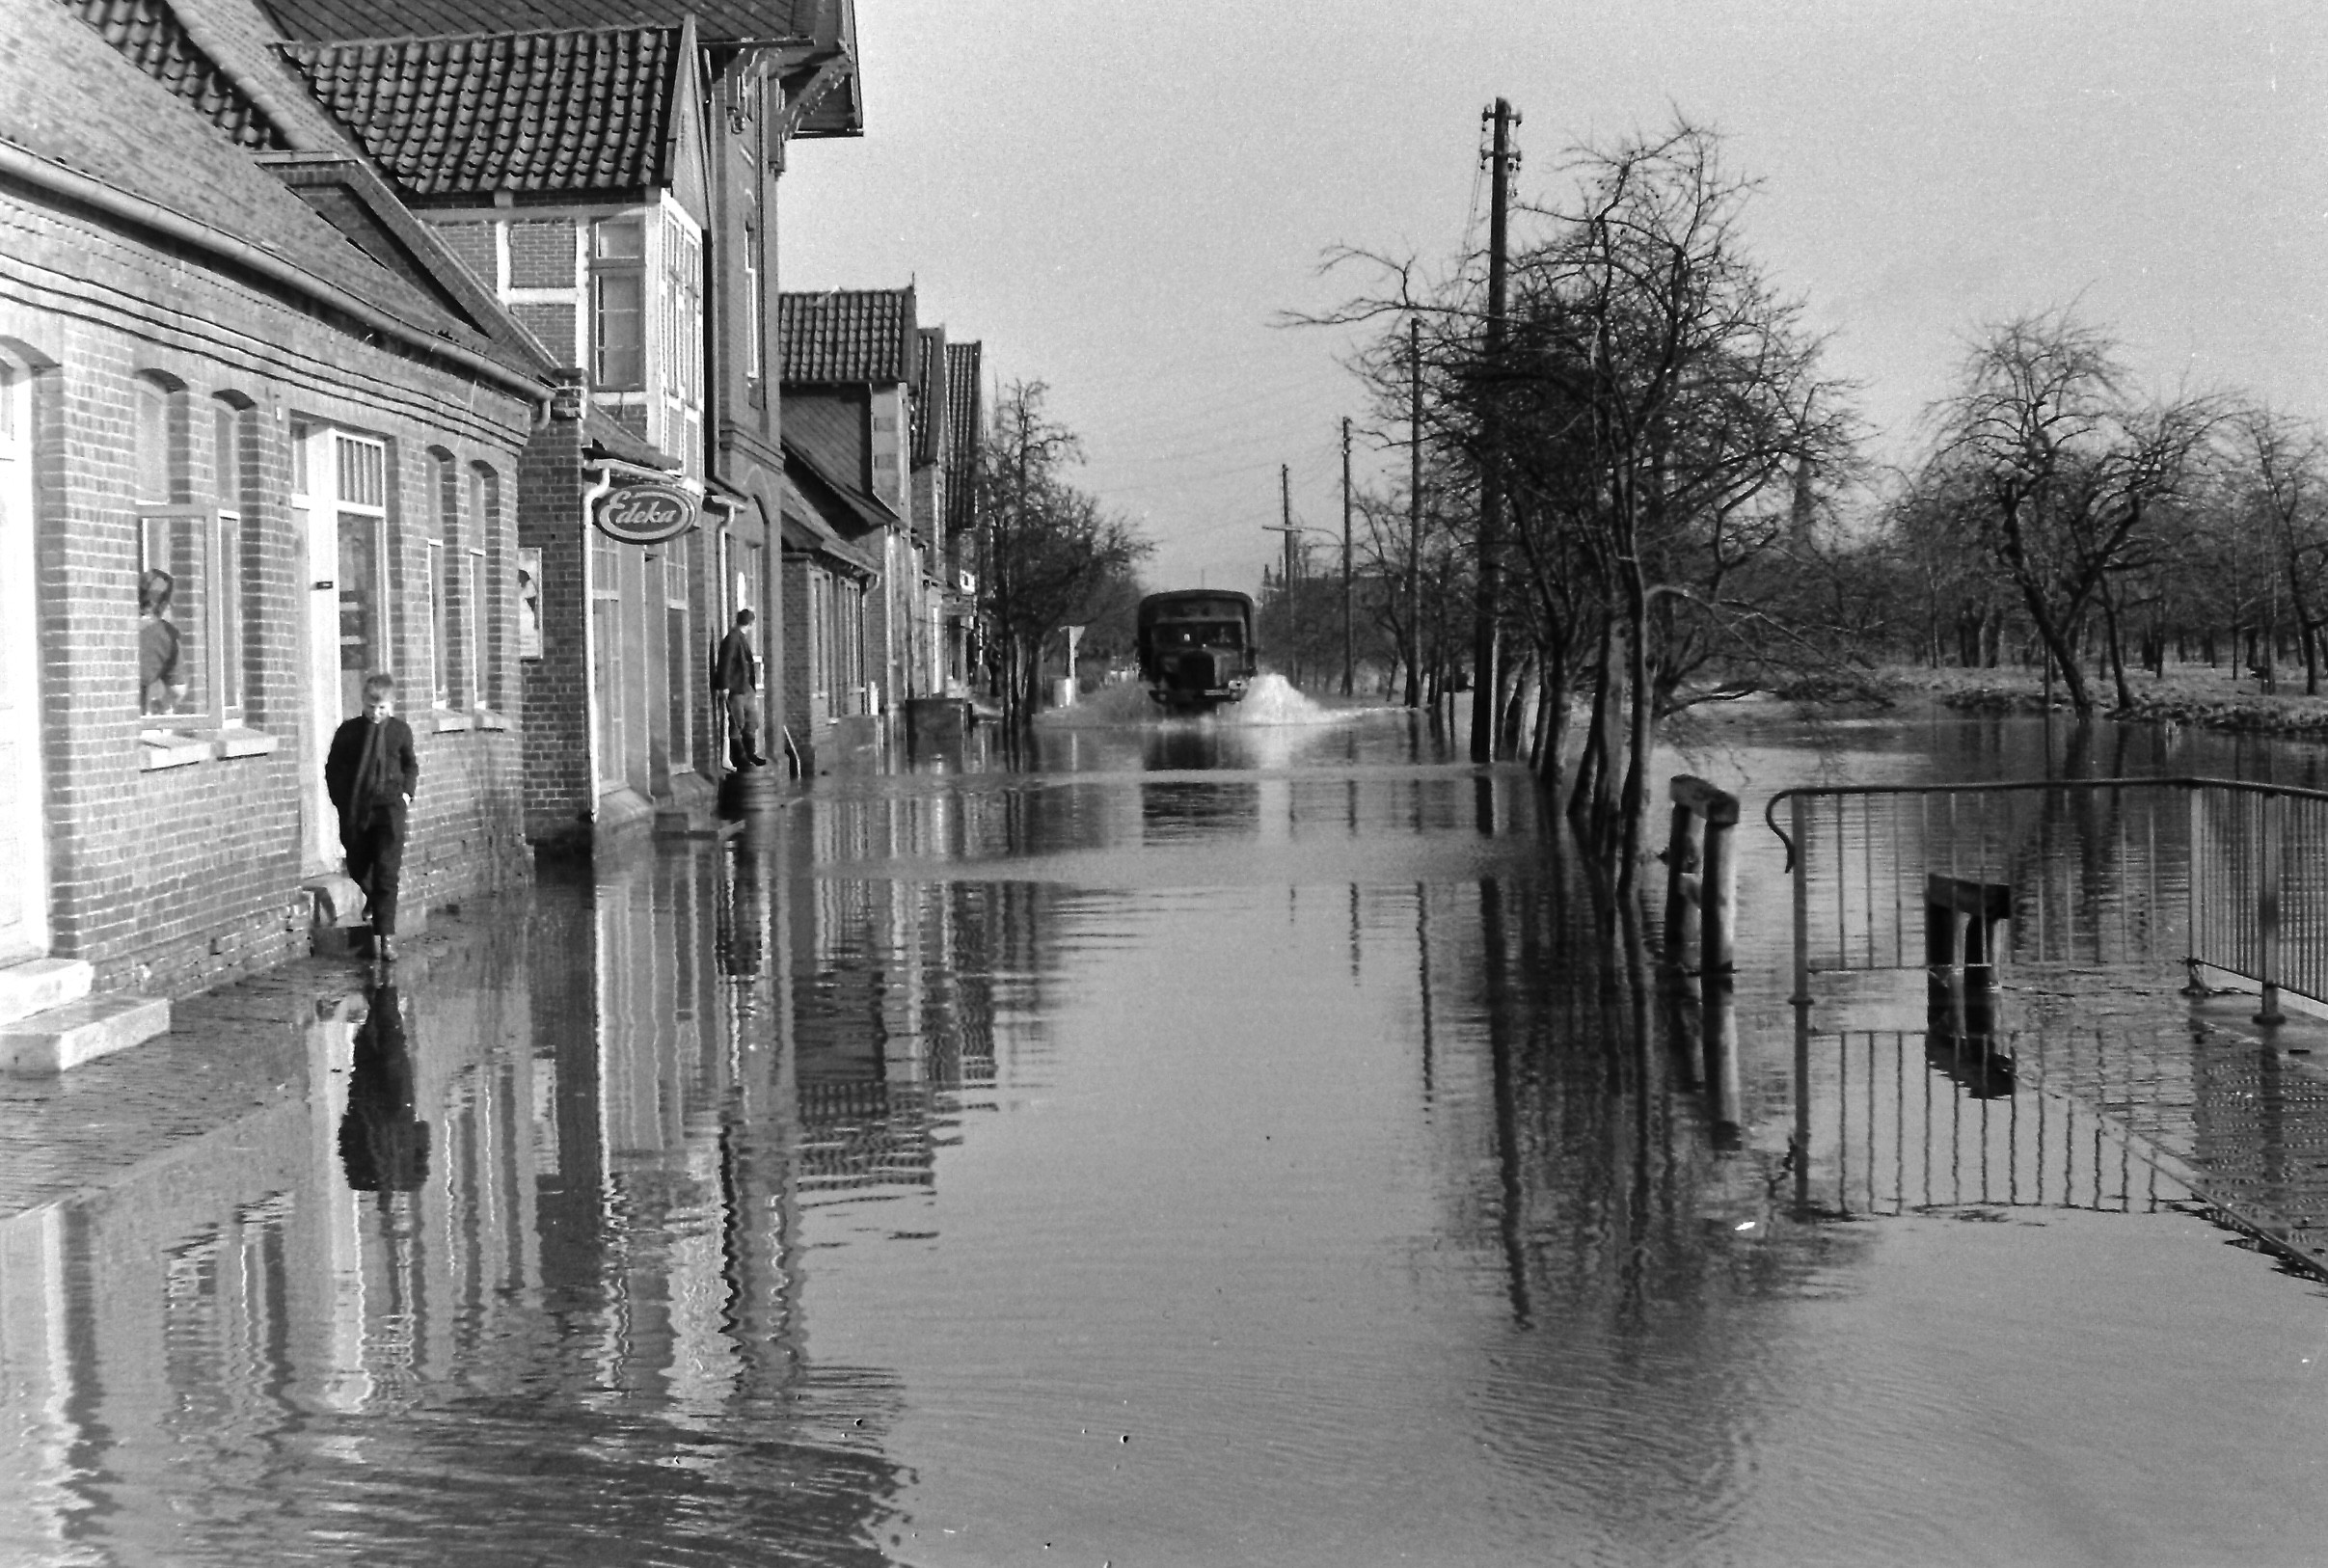 Die schwere Sturmflut in der Nacht vom 16. auf den 17. Februar 1962 hatte auch in den Gemeinden Jork und Borstel die schlimmsten Auswirkungen. Wir sehen hier die überflutete „Borsteler Reihe” Richtung Borstel.